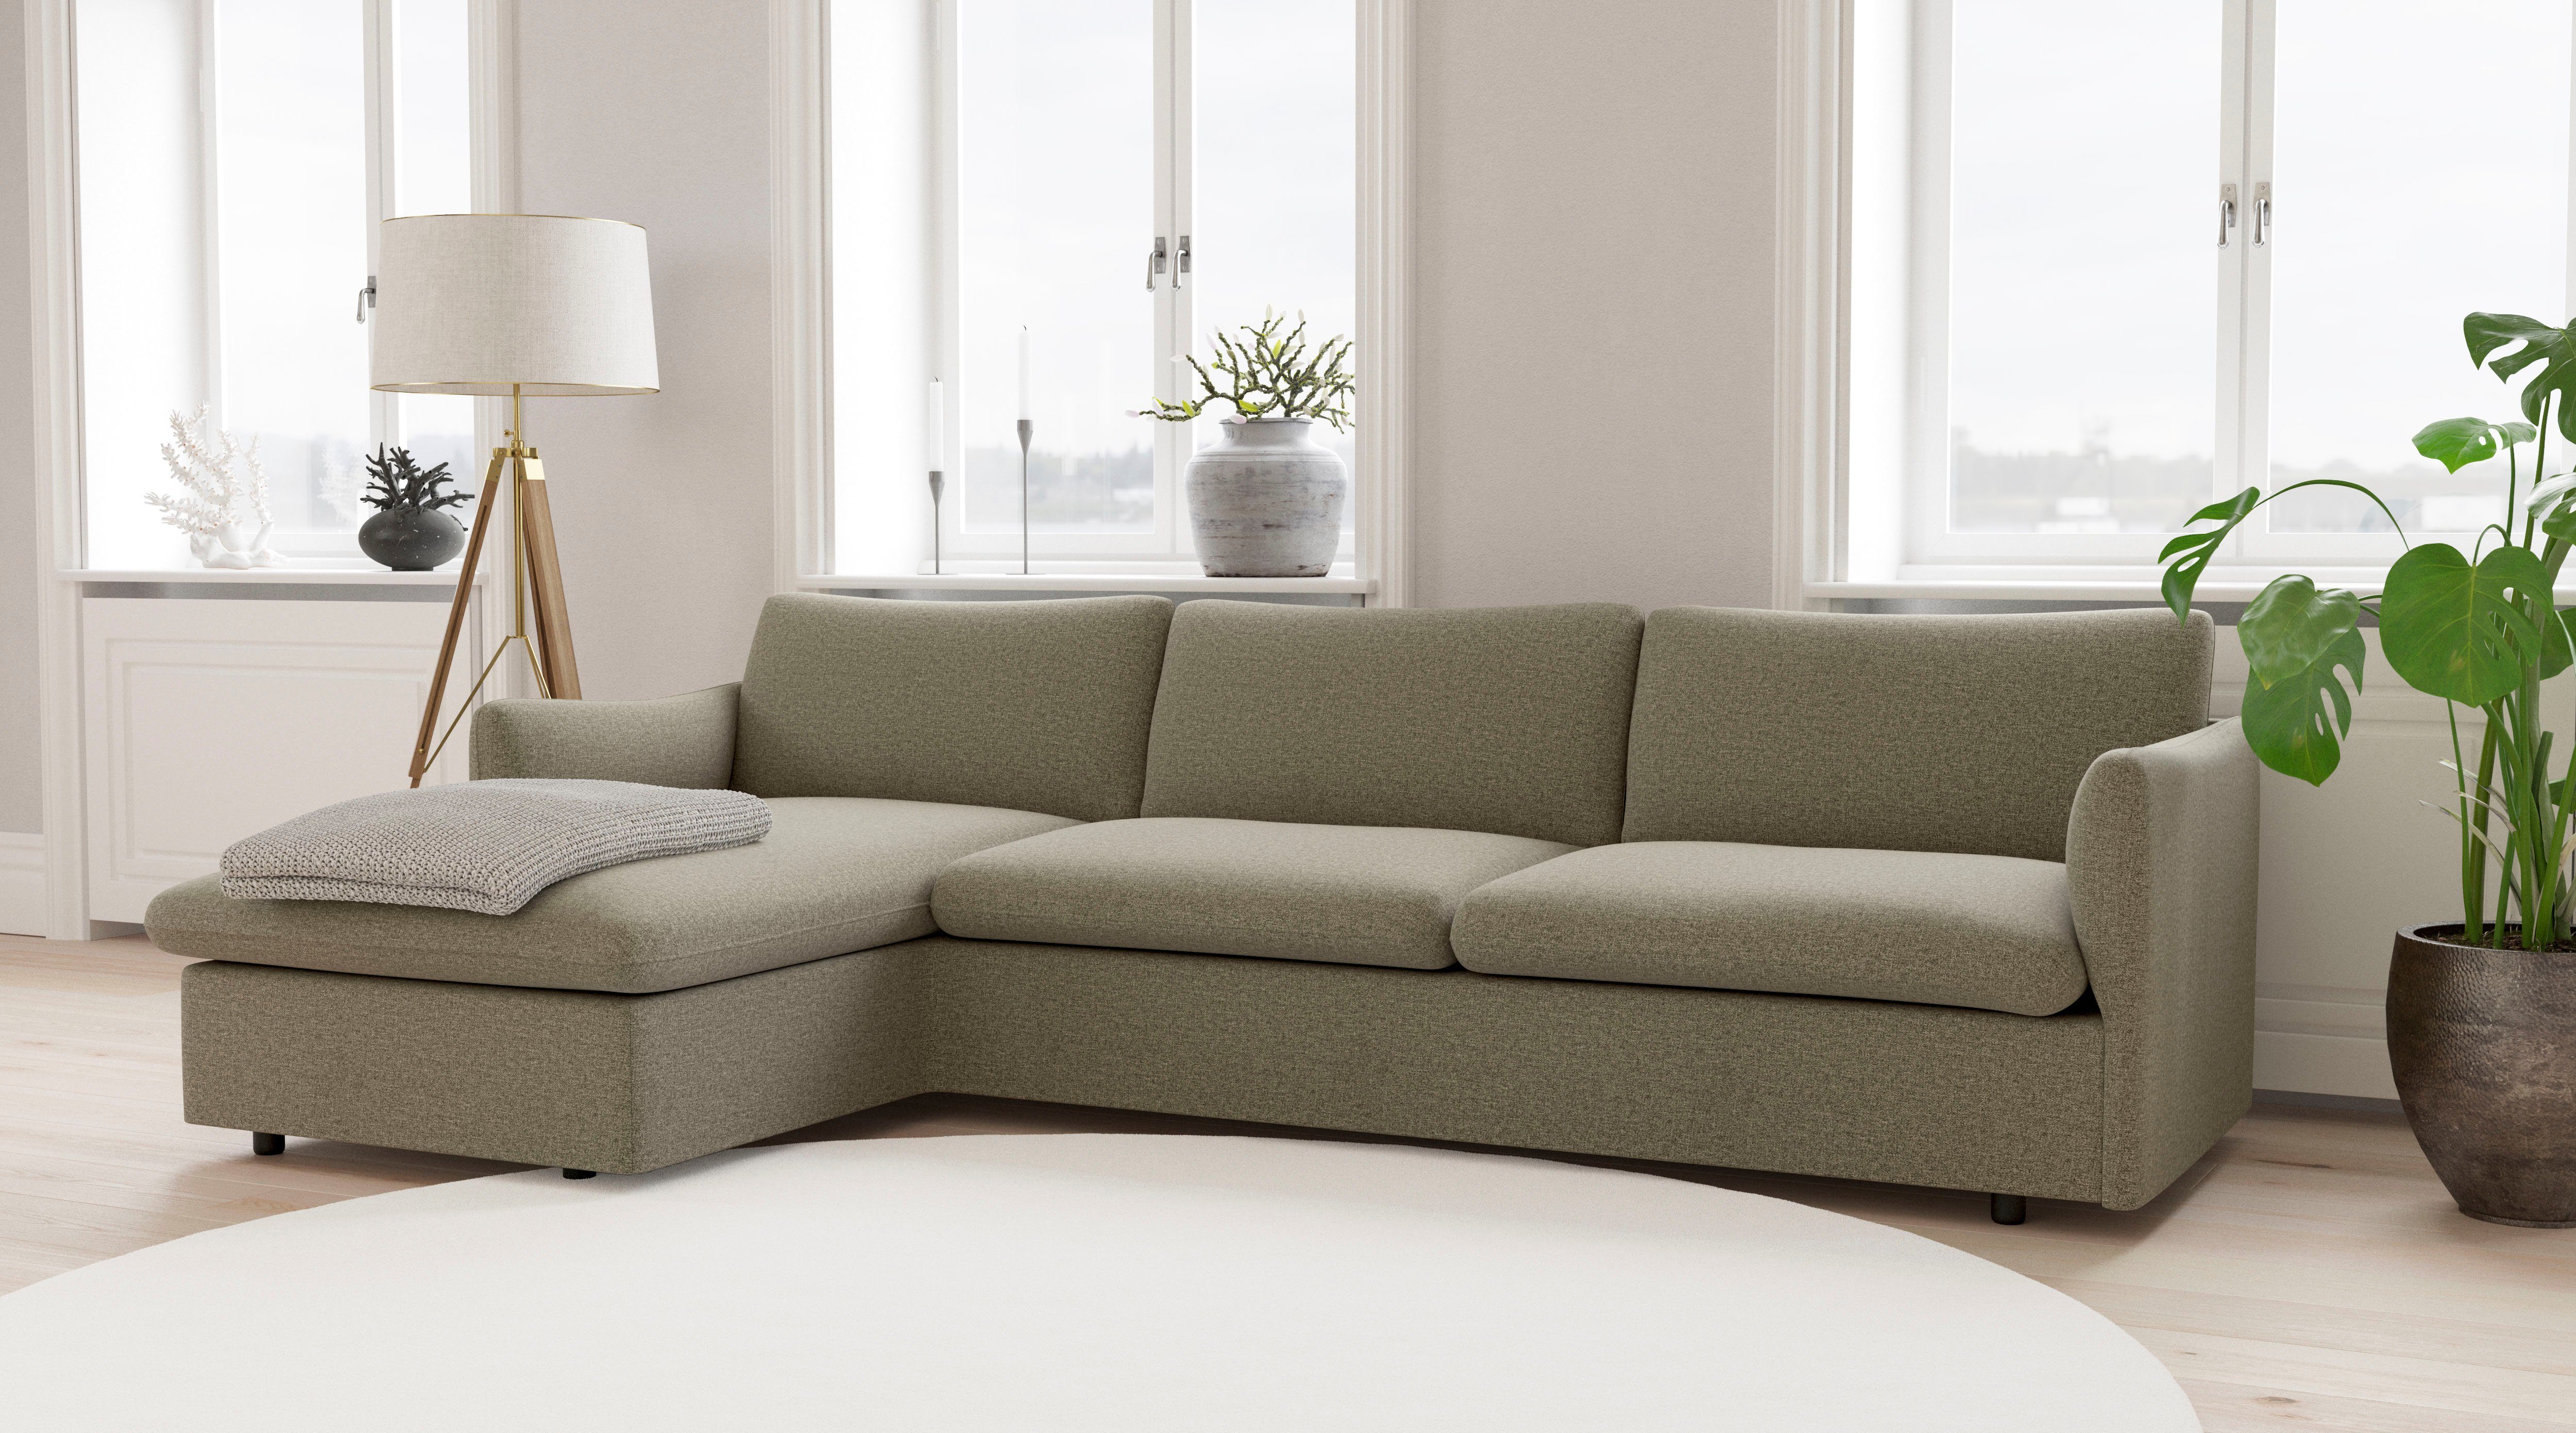 andas Ecksofa Imatra, in attraktiver Sofakombinationen unterschiedliche verfügbar Form